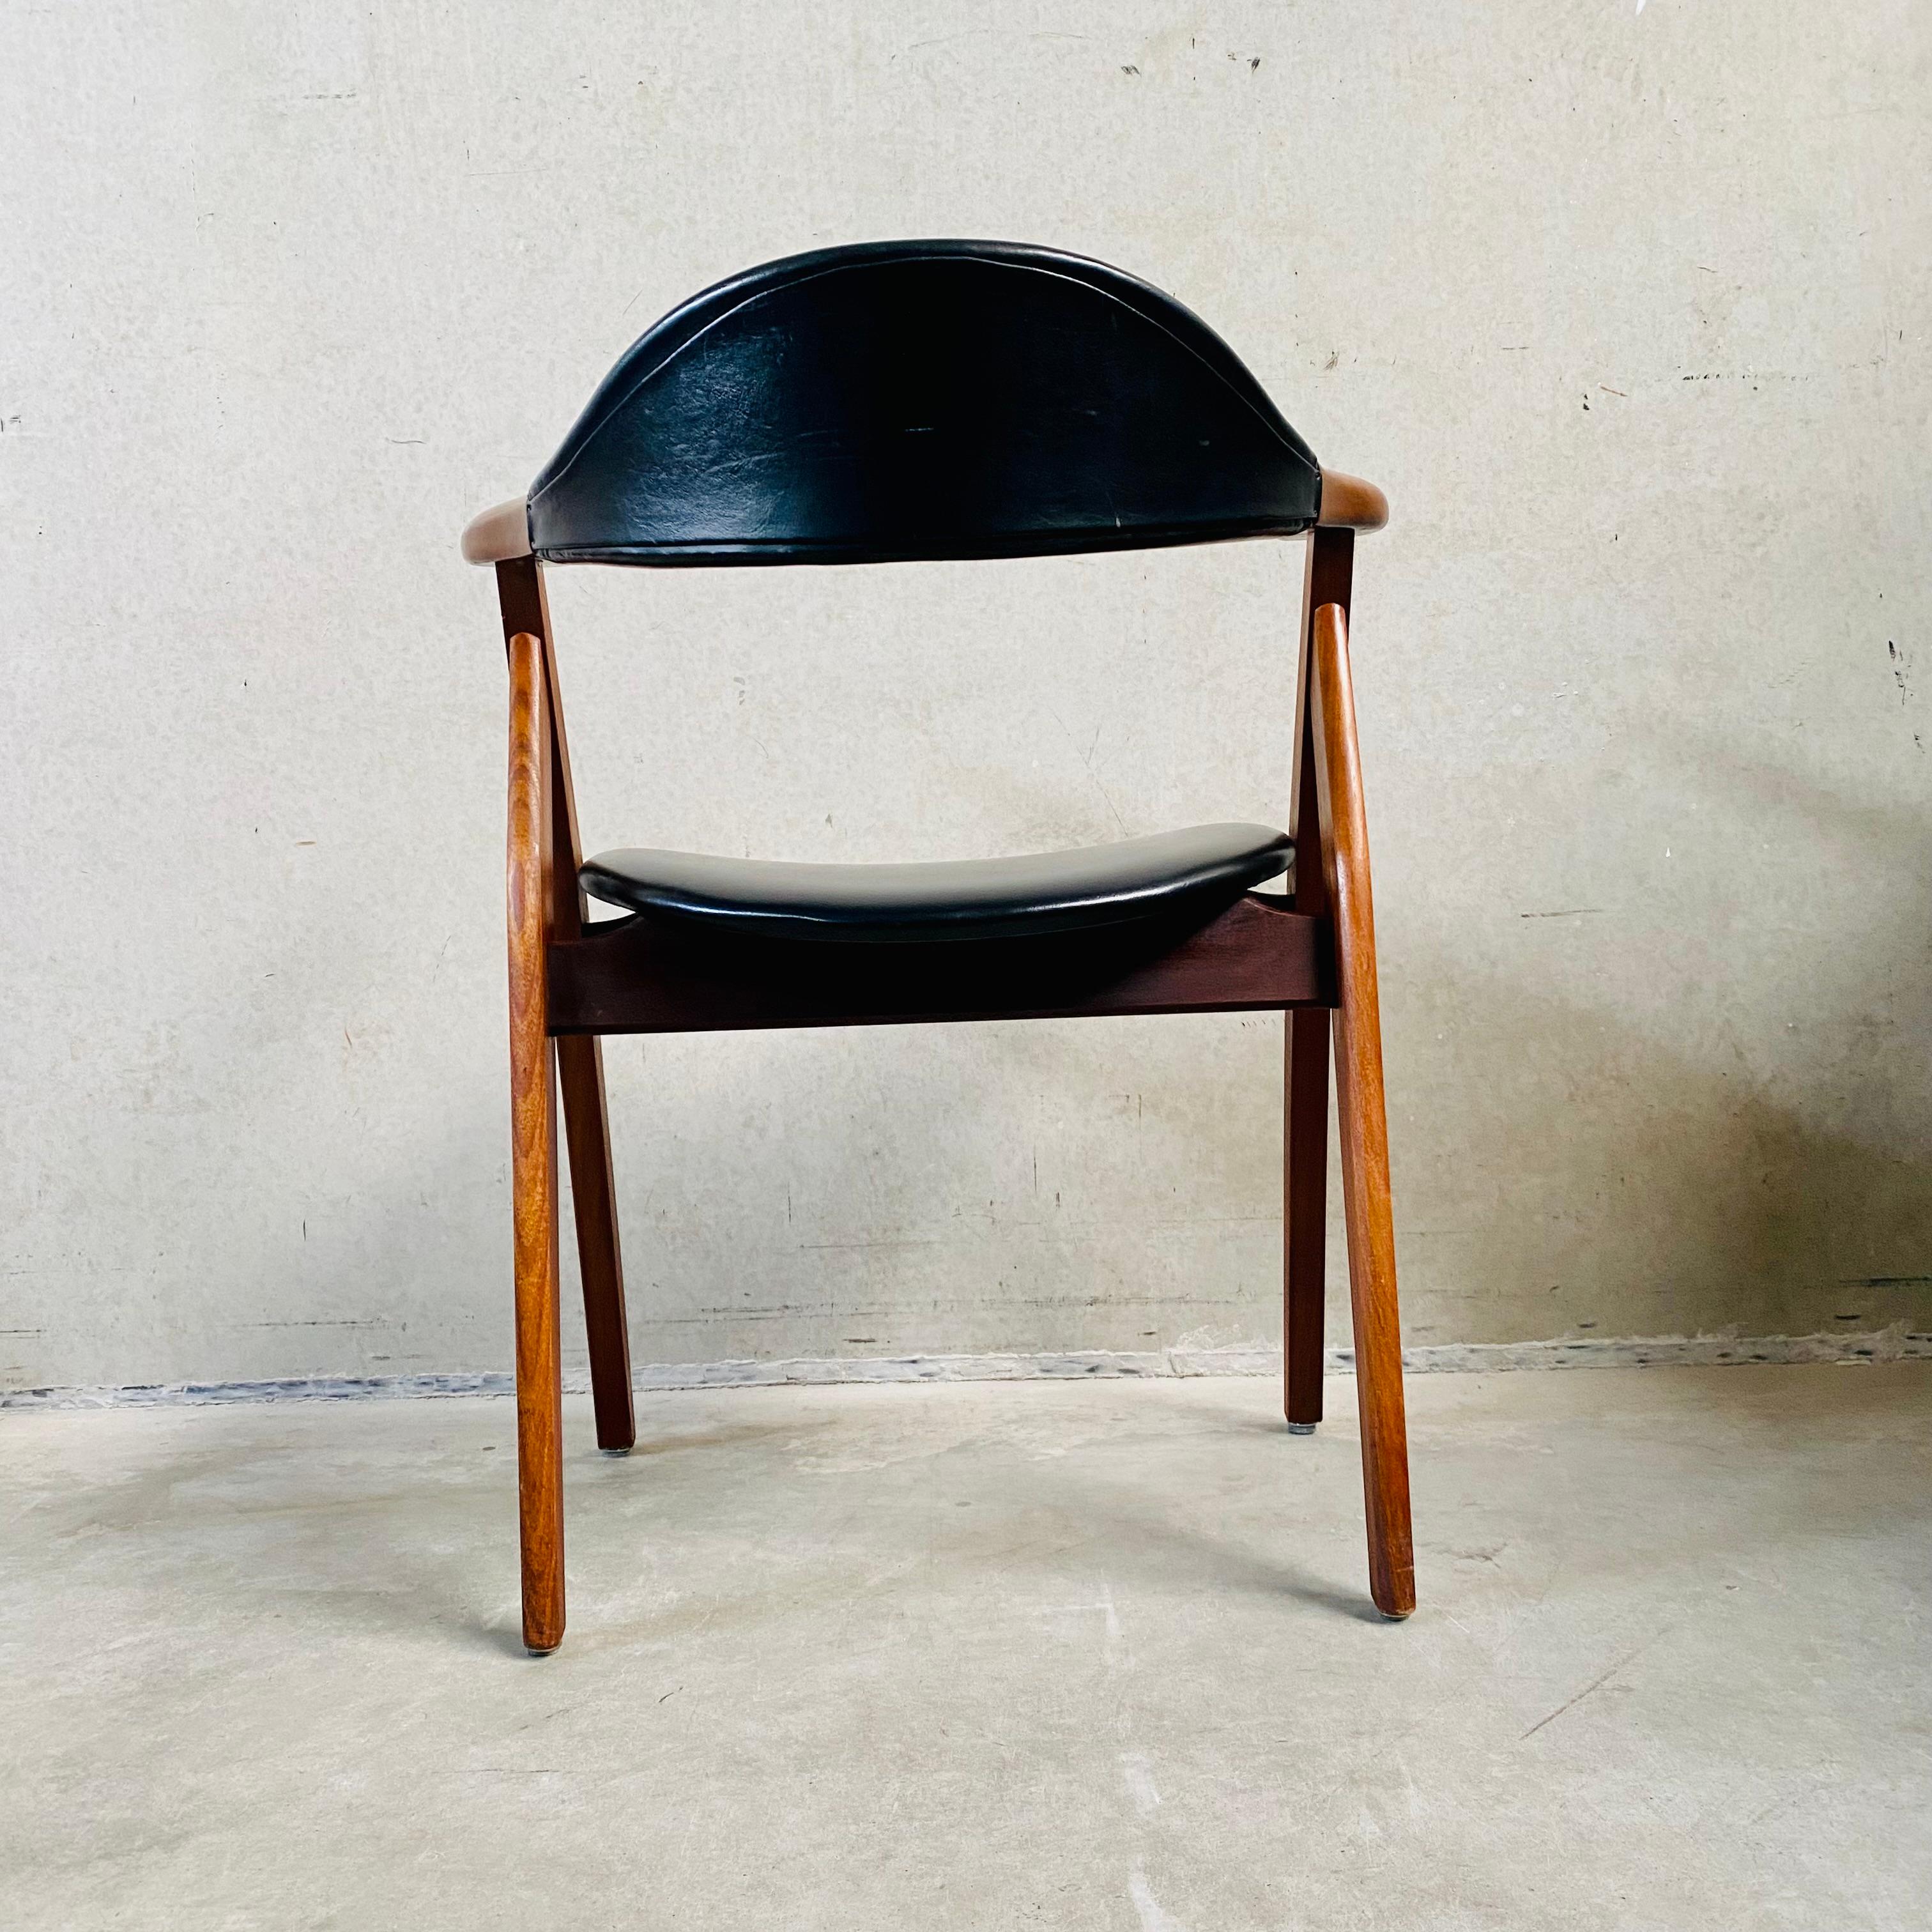 Cow Horn Chair von Tijsseling Meubelfabriek, Niederlande 1960 (Kunstleder)